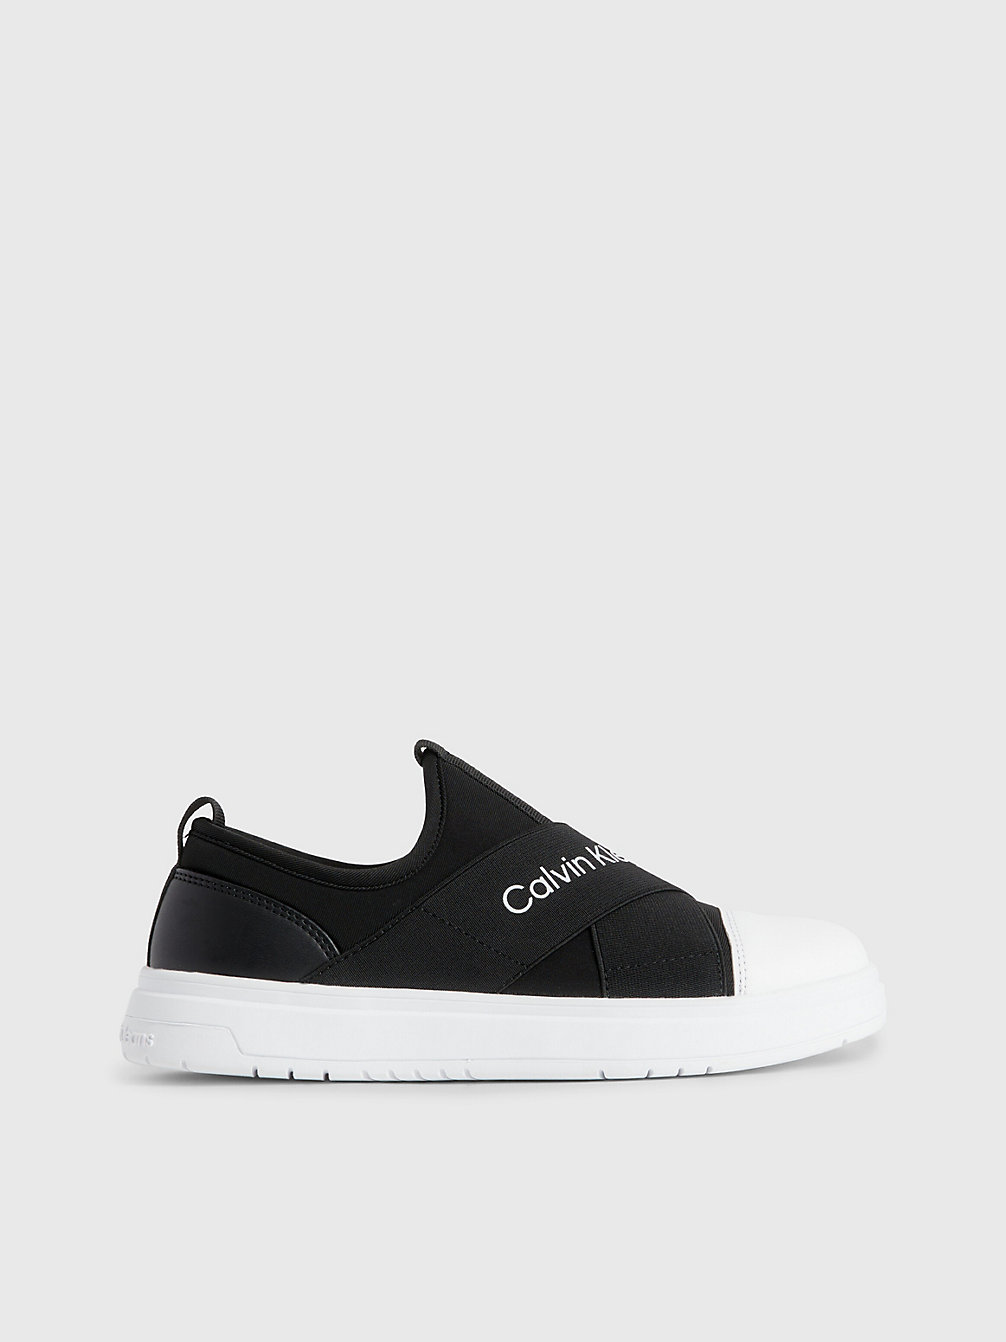 BLACK Pull-On-Sneakers Für Kinder undefined kids unisex Calvin Klein